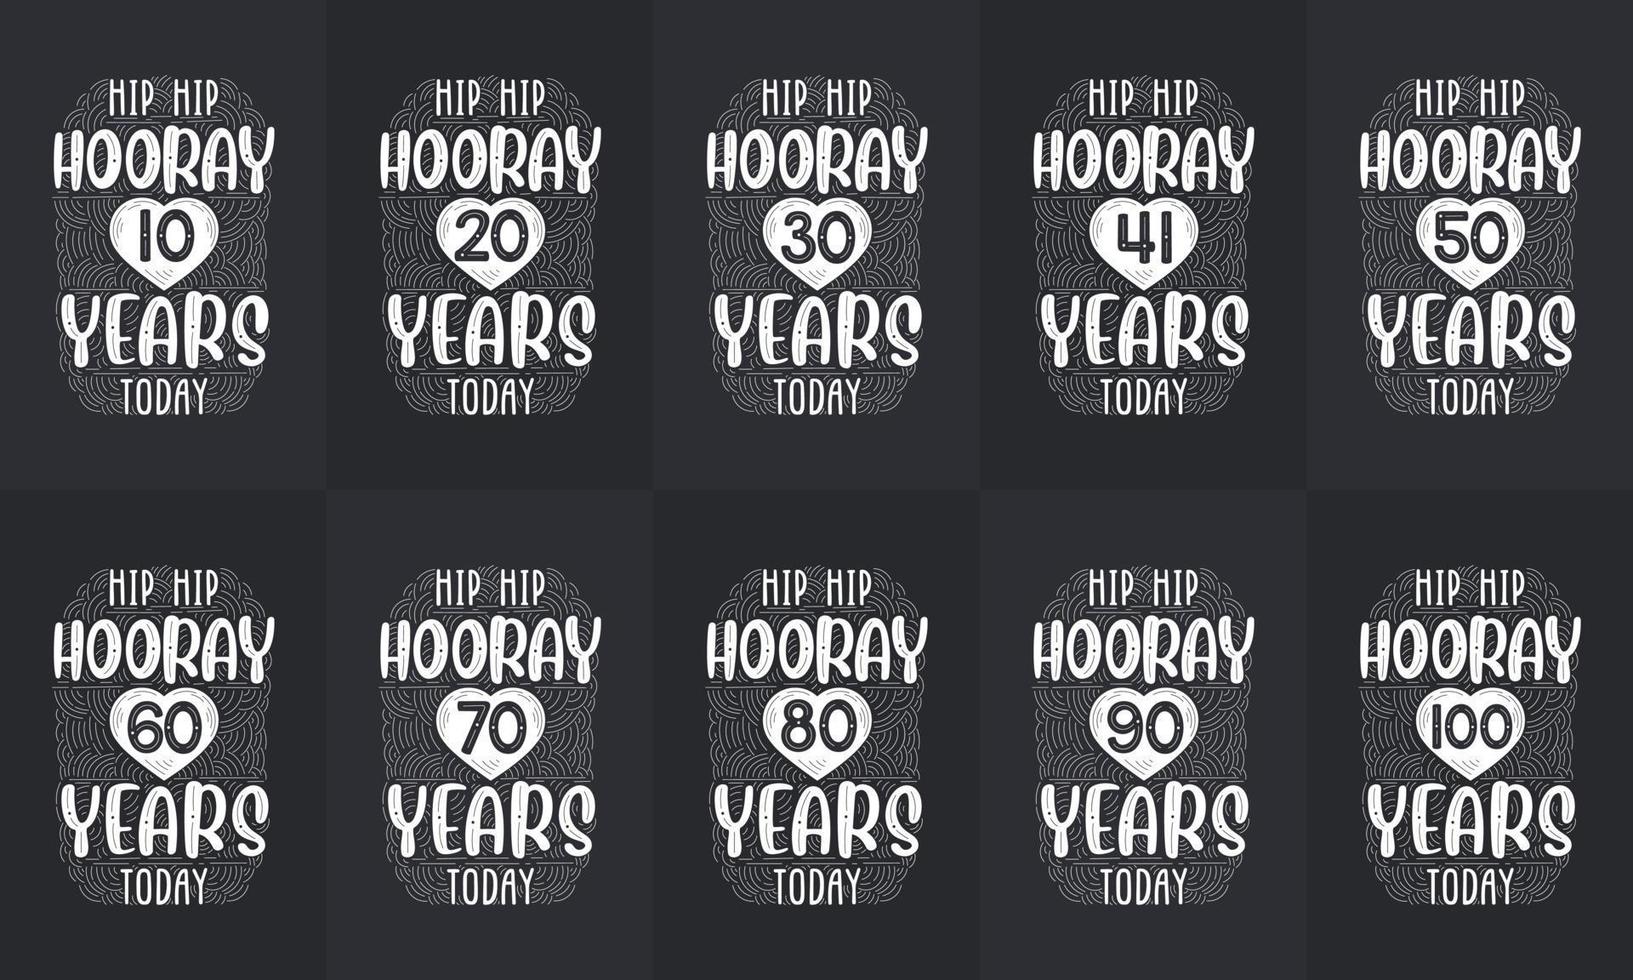 conjunto de diseño de feliz cumpleaños. el mejor paquete de diseño de citas de tipografía de cumpleaños. hip hip hurra 10, 18, 20, 30, 40, 50, 60, 70, 80, 90, 100 años hoy vector